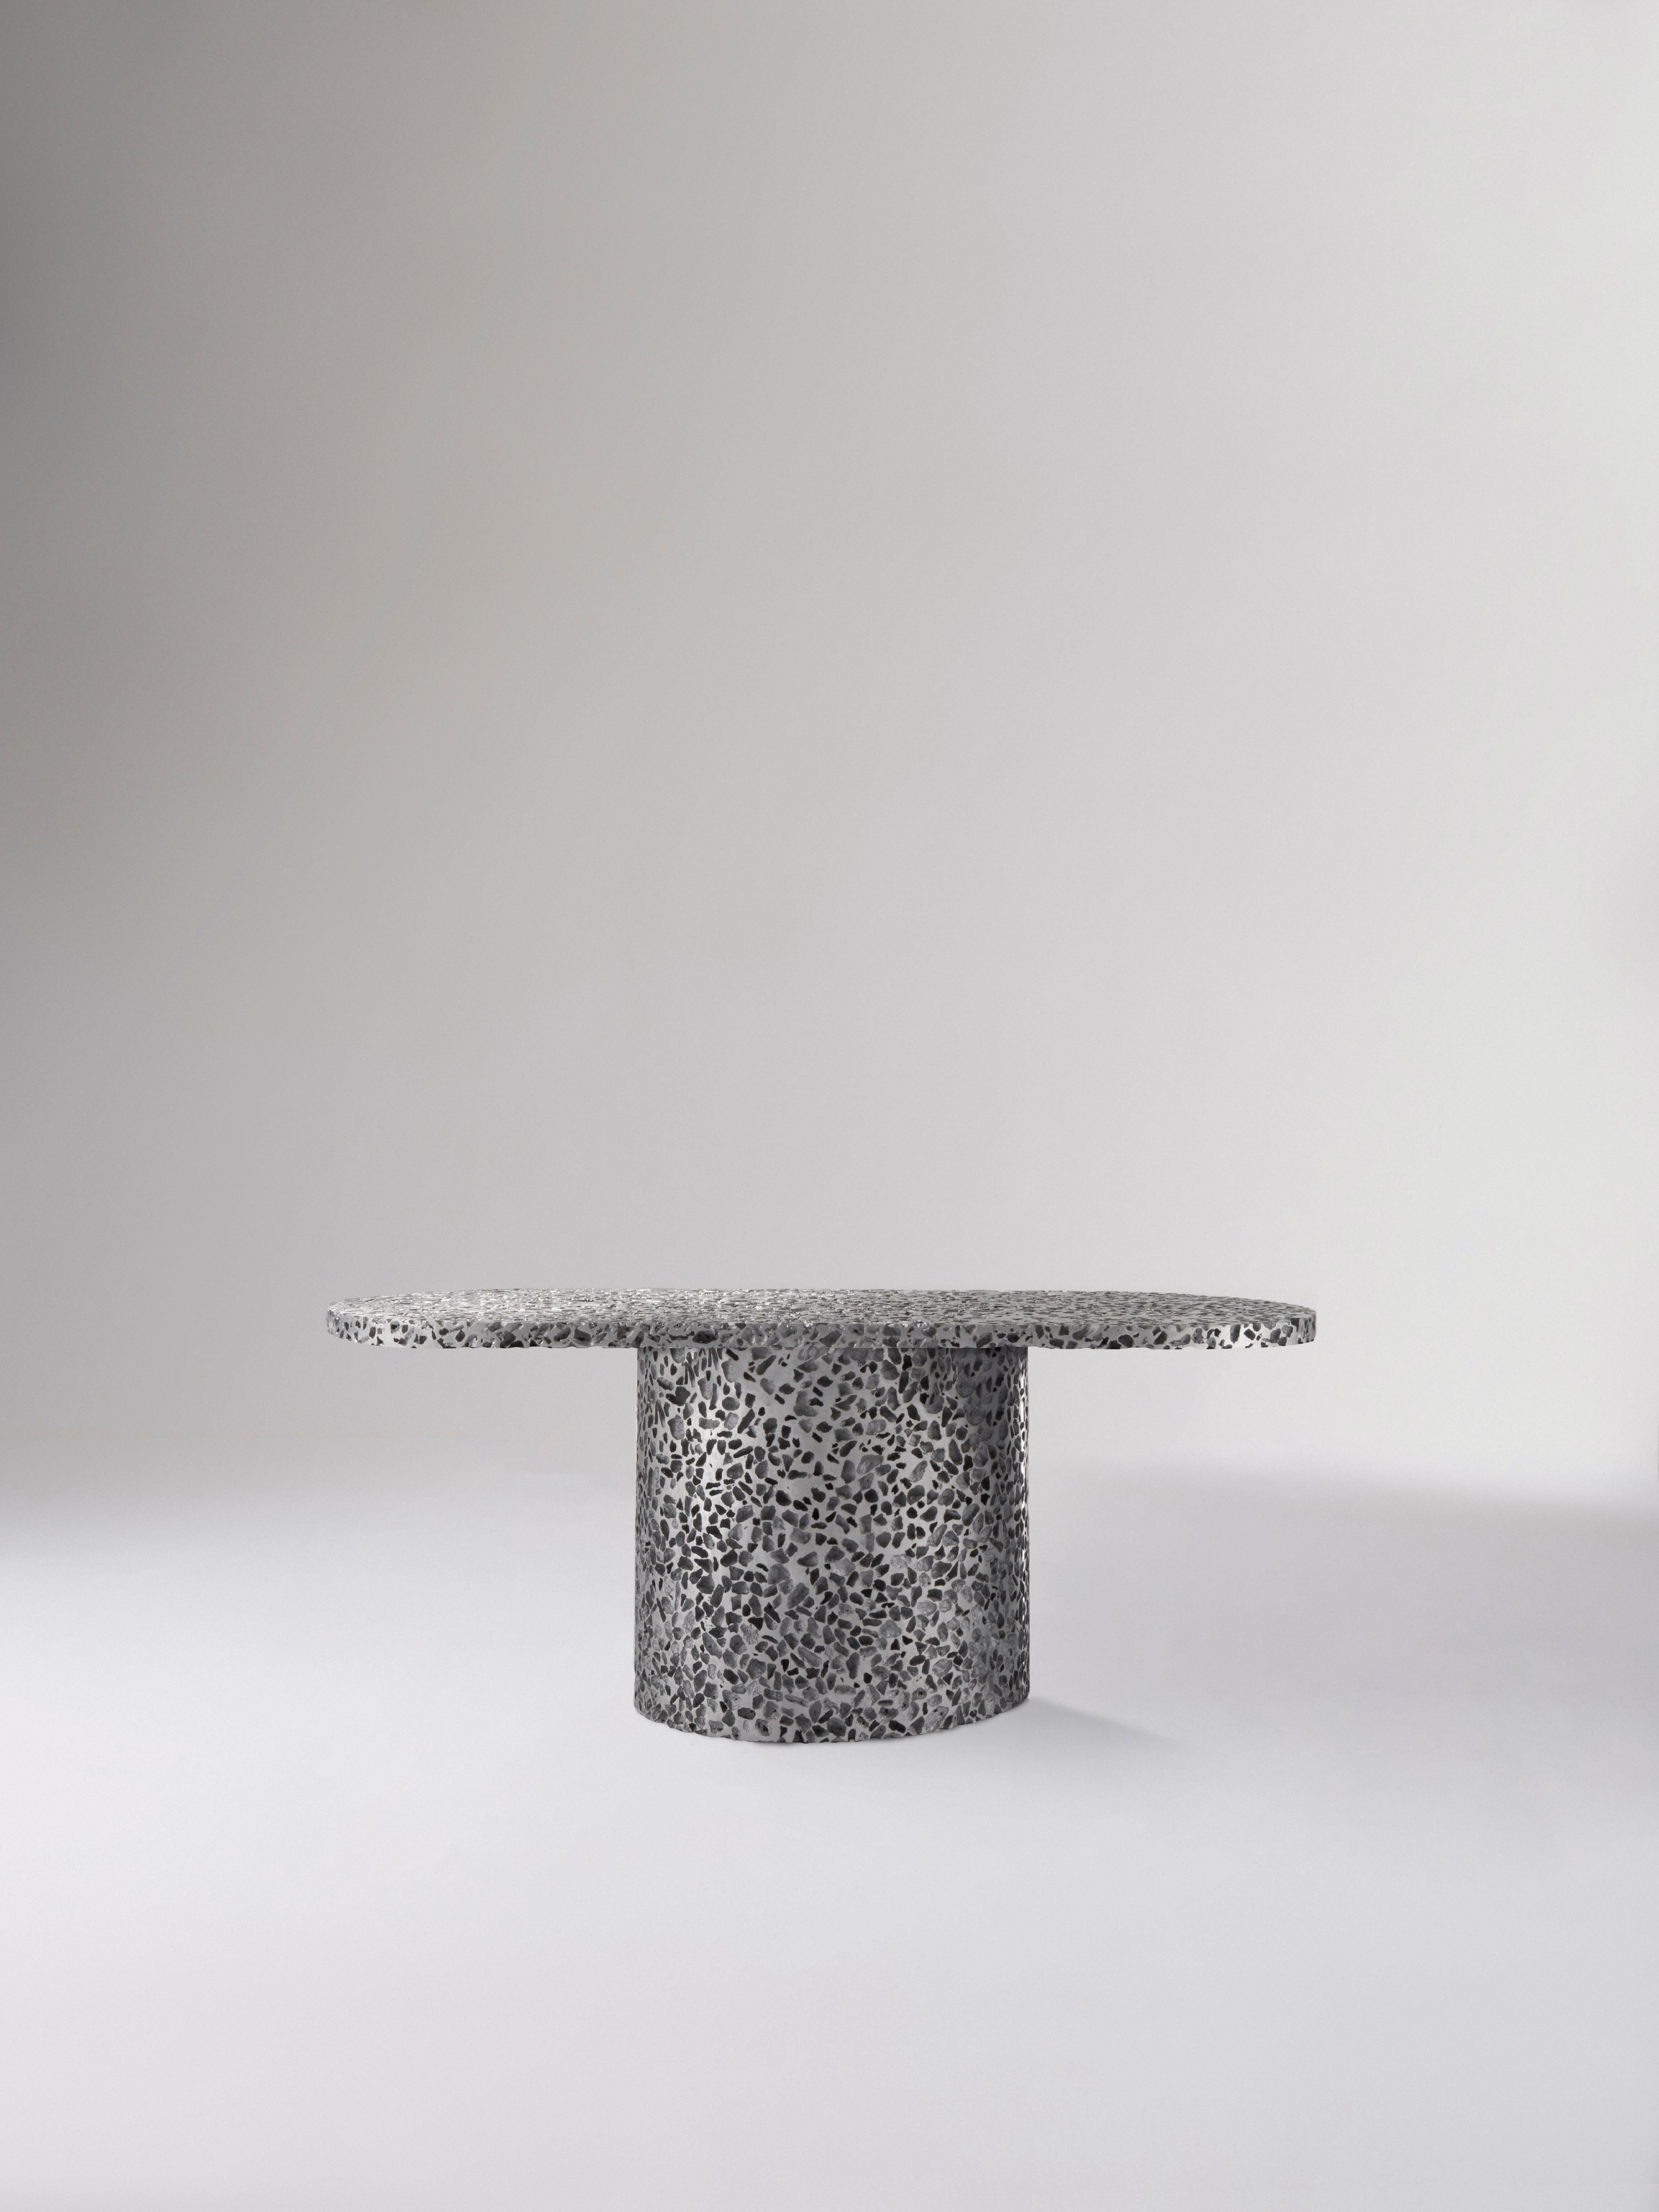 Cette table basse est un meuble fonctionnel, mais c'est aussi un diptyque créé à partir du microcosme des structures aléatoires de la mousse d'aluminium à cellules ouvertes et de la sévérité et de la précision des processus métalliques industriels